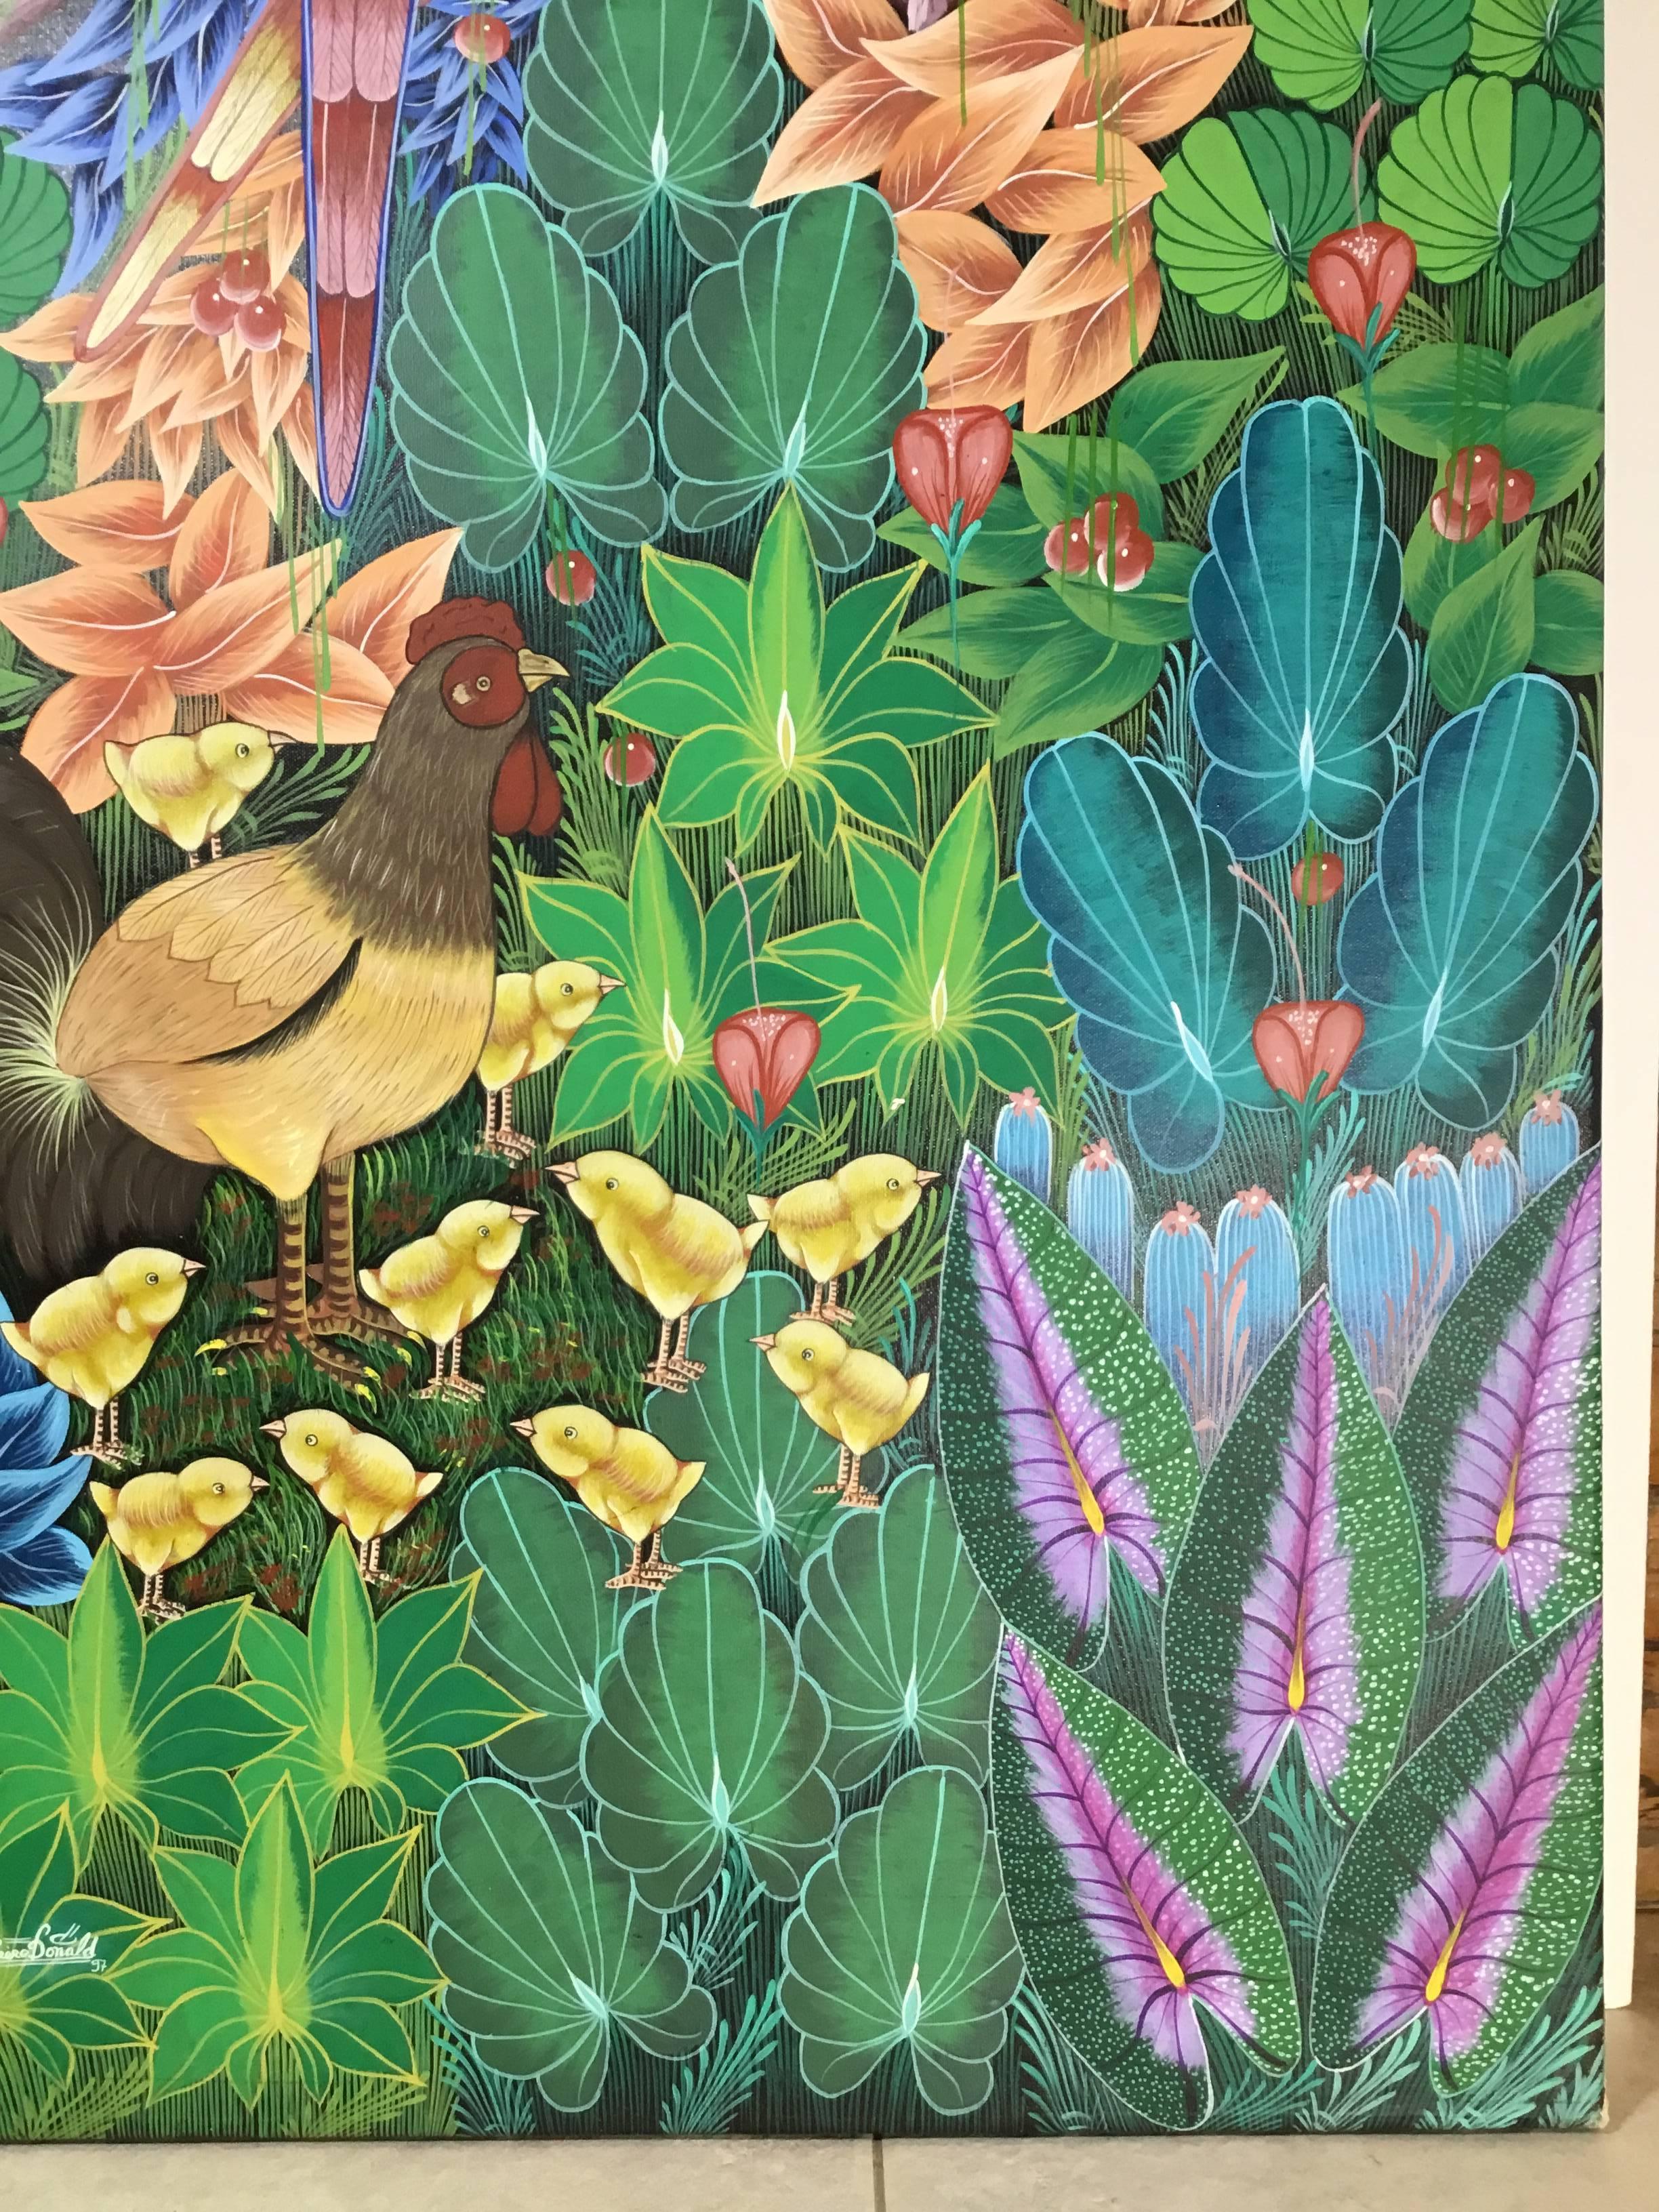 Schöne Ölgemälde auf Leinwand Darstellung üppigen bunten Dschungel-Szene mit Papageien, Hühner und Küken alle von Reben Obst und Blumen umgeben. Dieses außergewöhnliche Original-Ölgemälde ist vom Künstler rechts unten signiert und datiert. Der